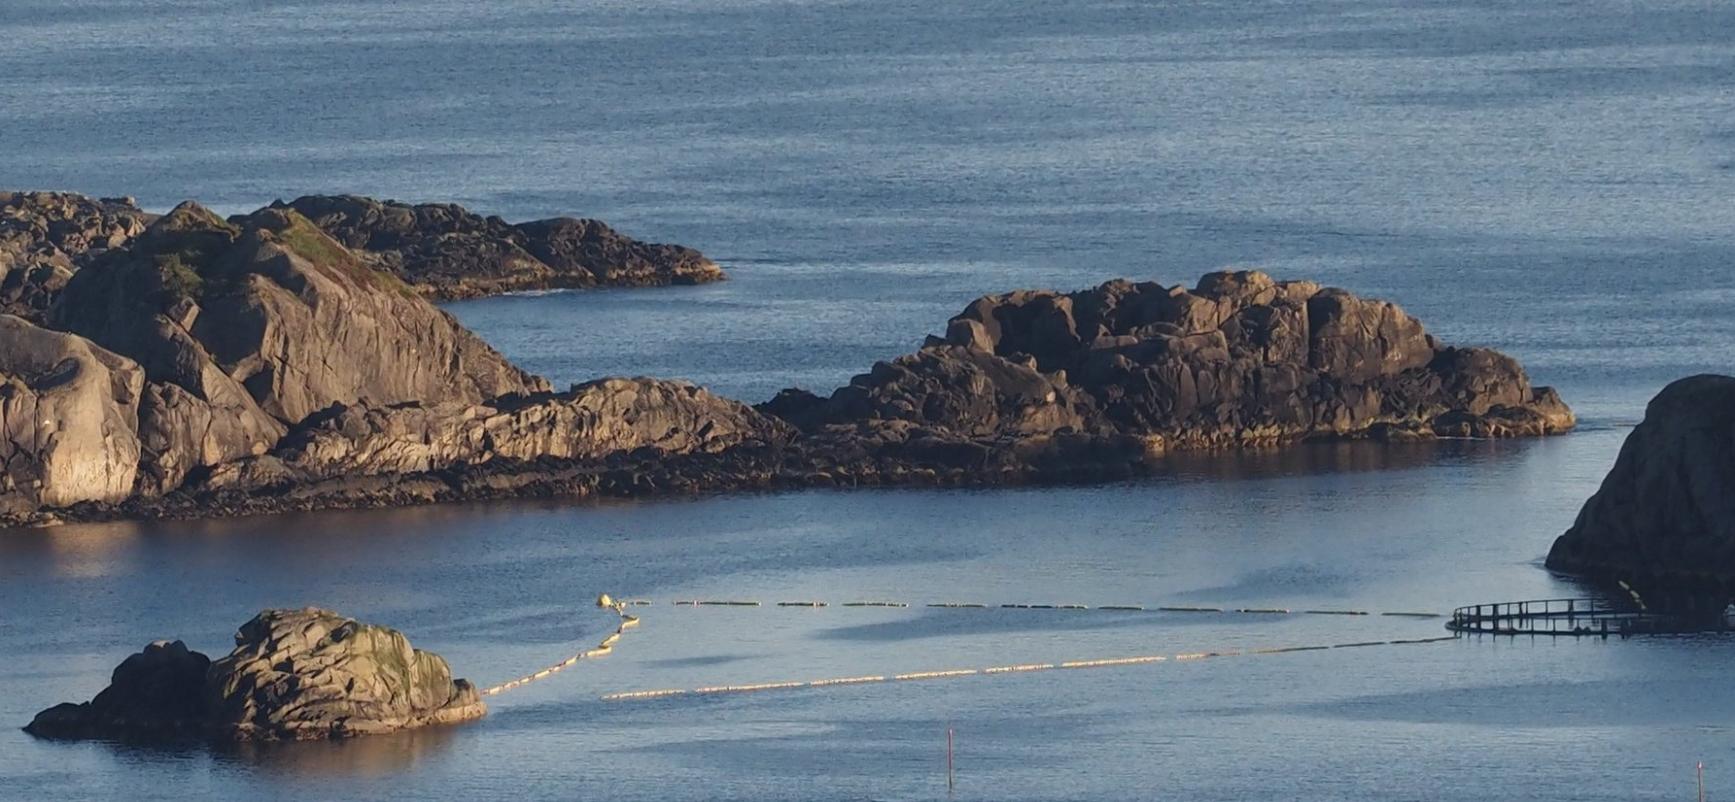 挪威政府计划捕捉年幼小须鲸进行长达六小时的声音测试 50多位科学家同声谴责